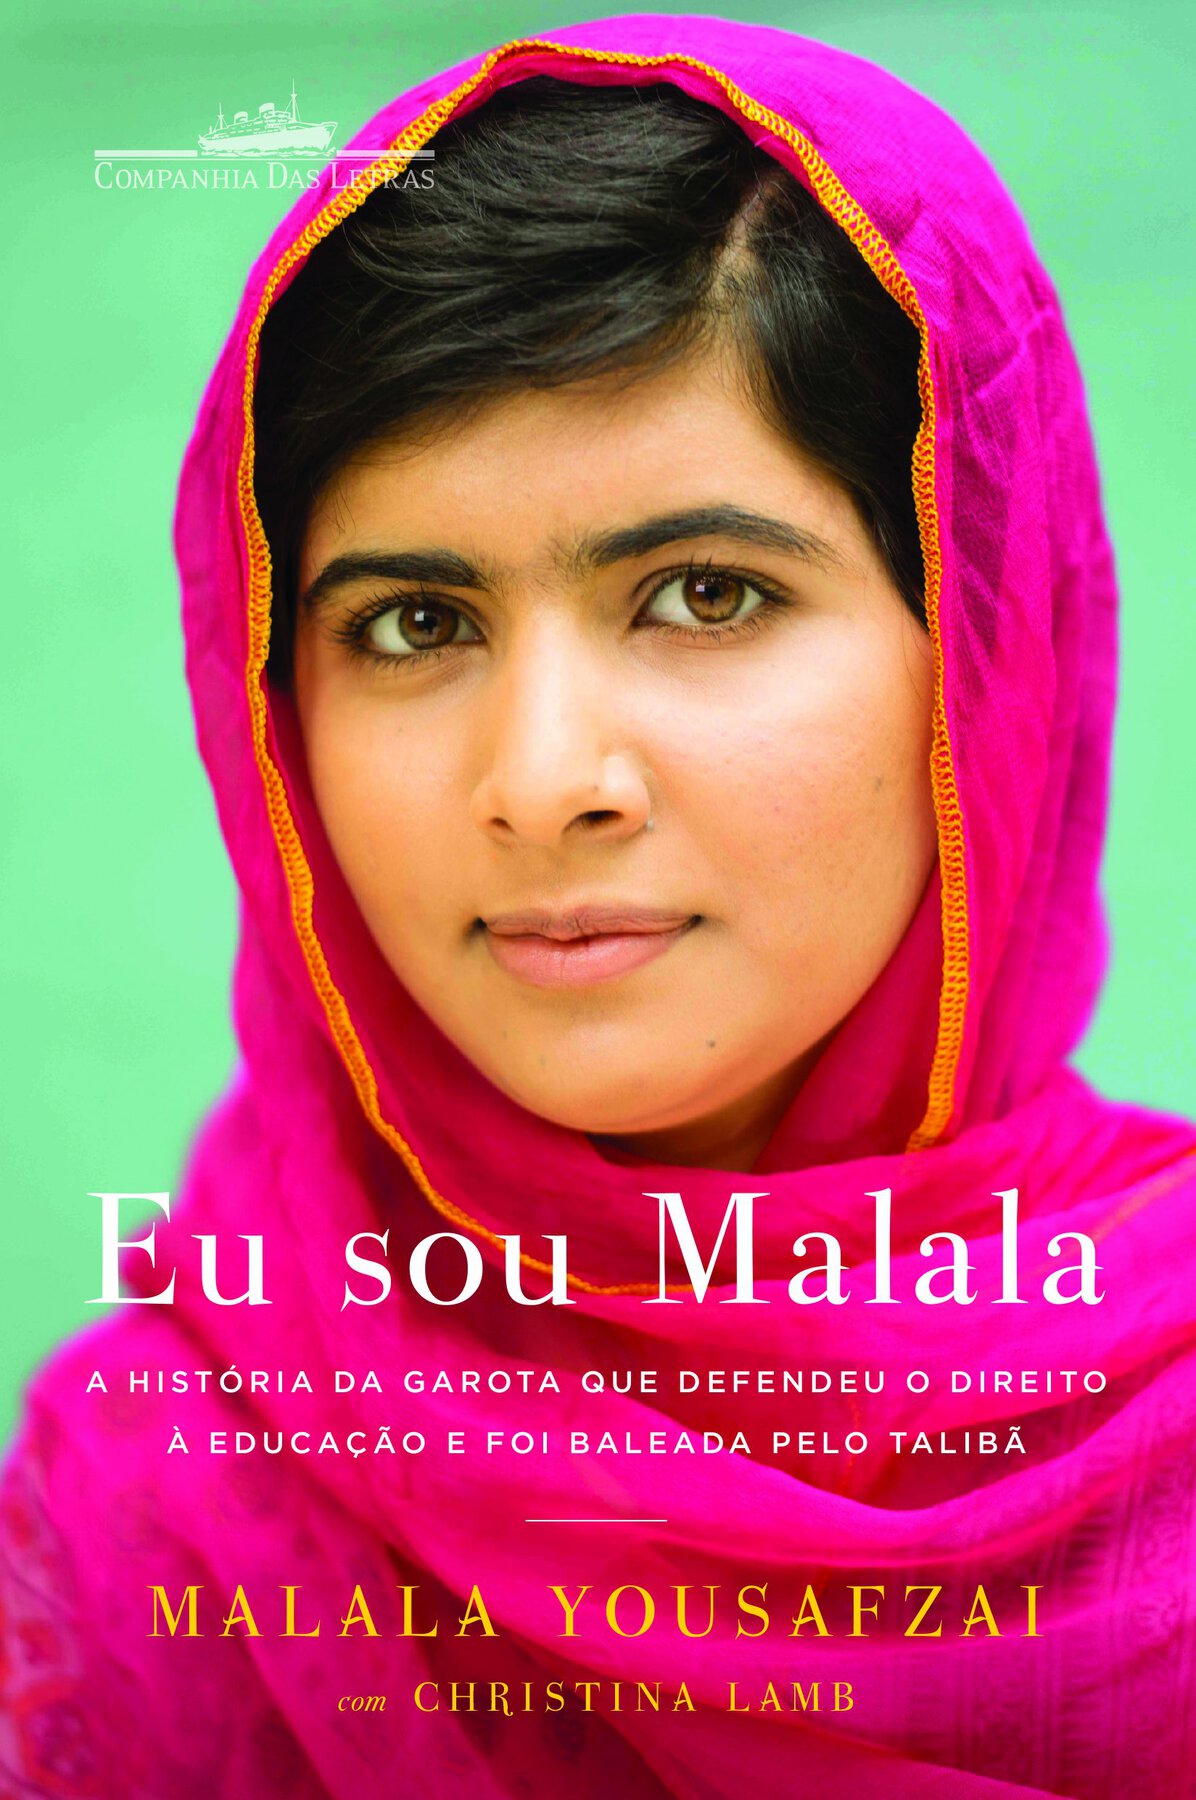 Capa de livro. Rosto de Malala Yousafzai, uma mulher vista dos ombros para cima. Ela tem cabelos pretos, penteados para a direita, sobrancelhas grossas com lenço em rosa, tampando o pescoço. Ela olha para frente. Na parte inferior, título do livro: Eu sou Malala.